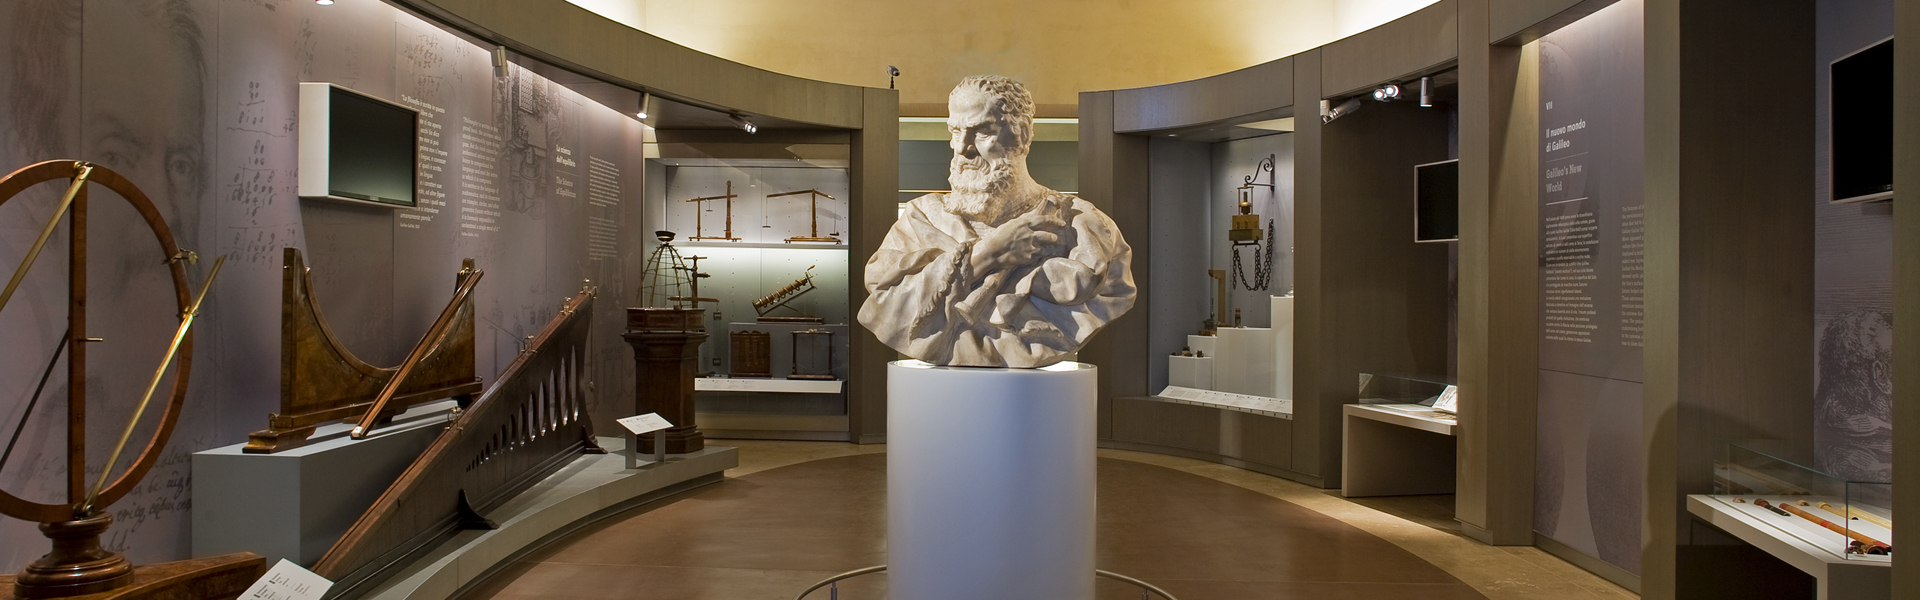 Passeggiata al Museo. Galileo e il collezionismo mediceo